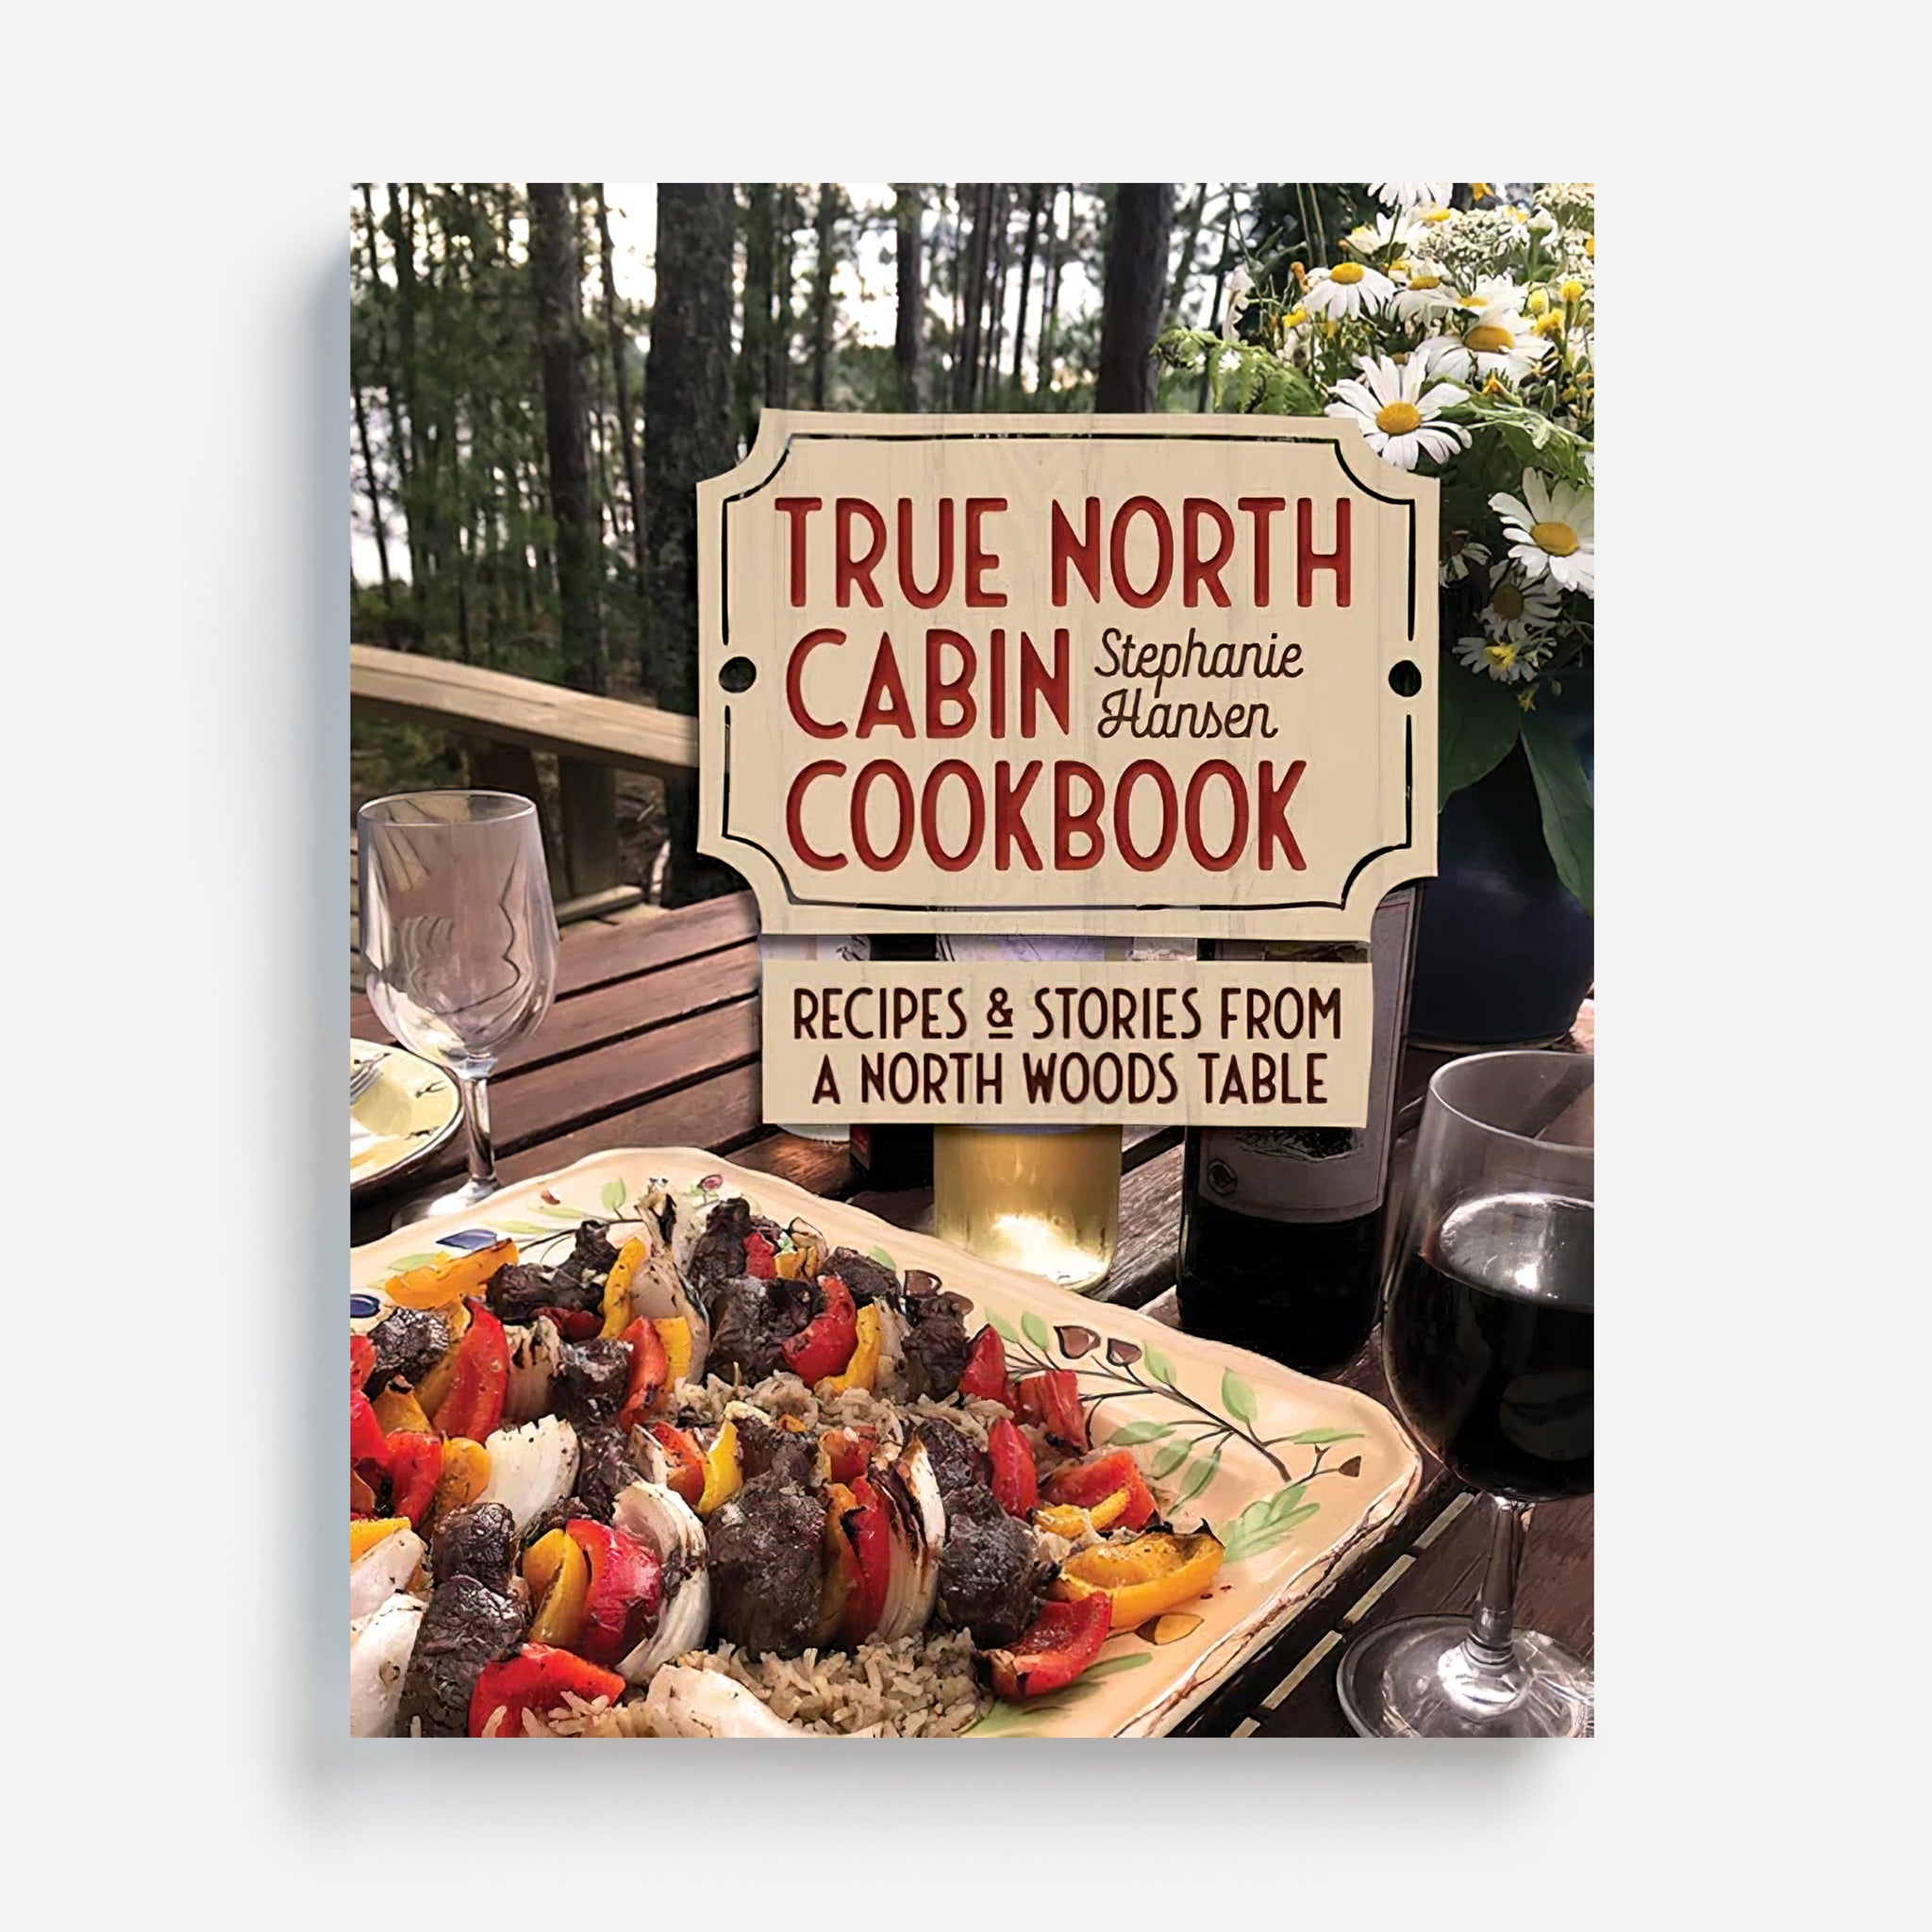 True North Cabin Cookbook by Stephanie Hansen